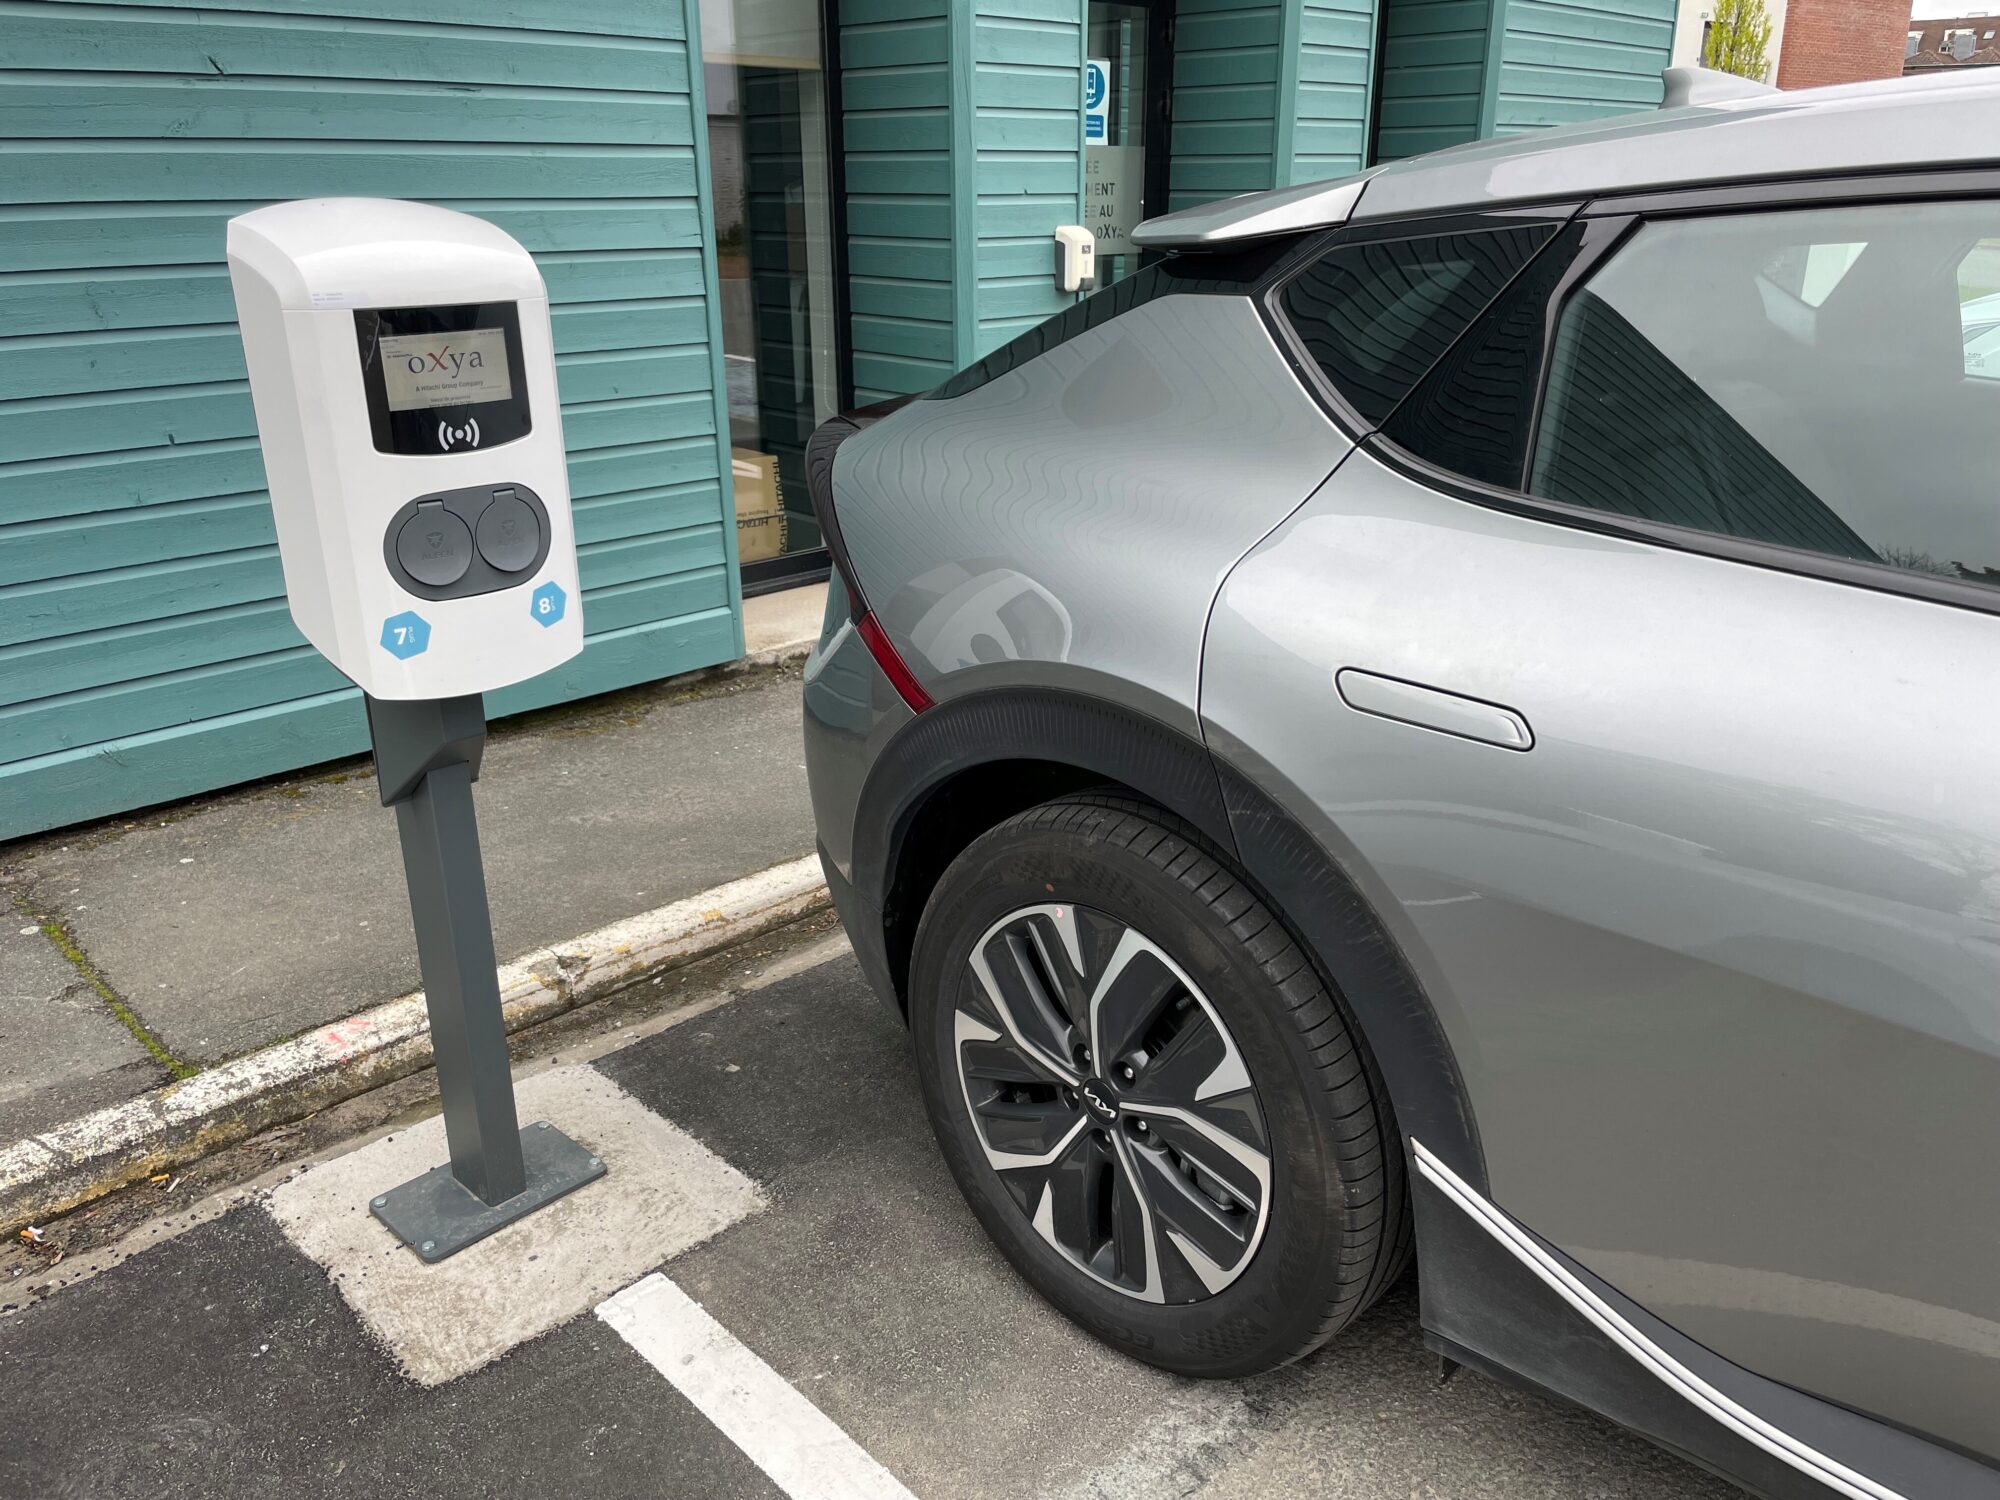 oXya s’engage dans l’électrification de sa flotte de véhicules en équipant ses parkings en bornes de recharge avec MobilityPlus France